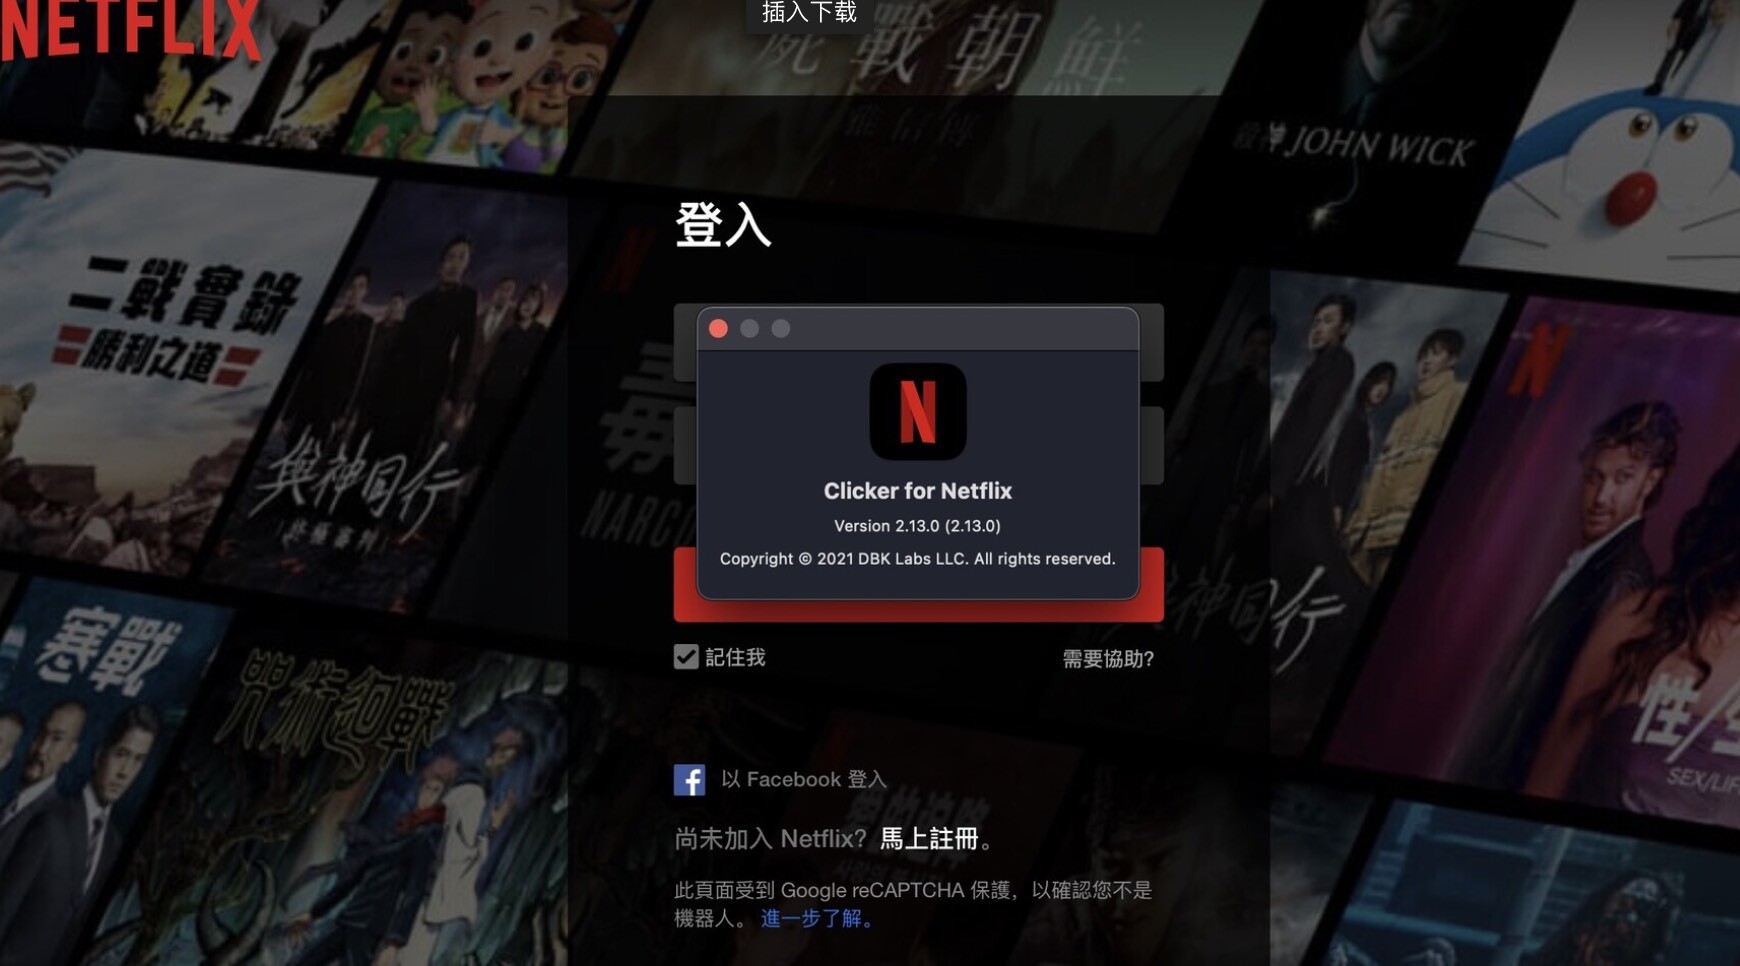 在mac上观看Netflix奈飞时字幕样式如何改变呢？